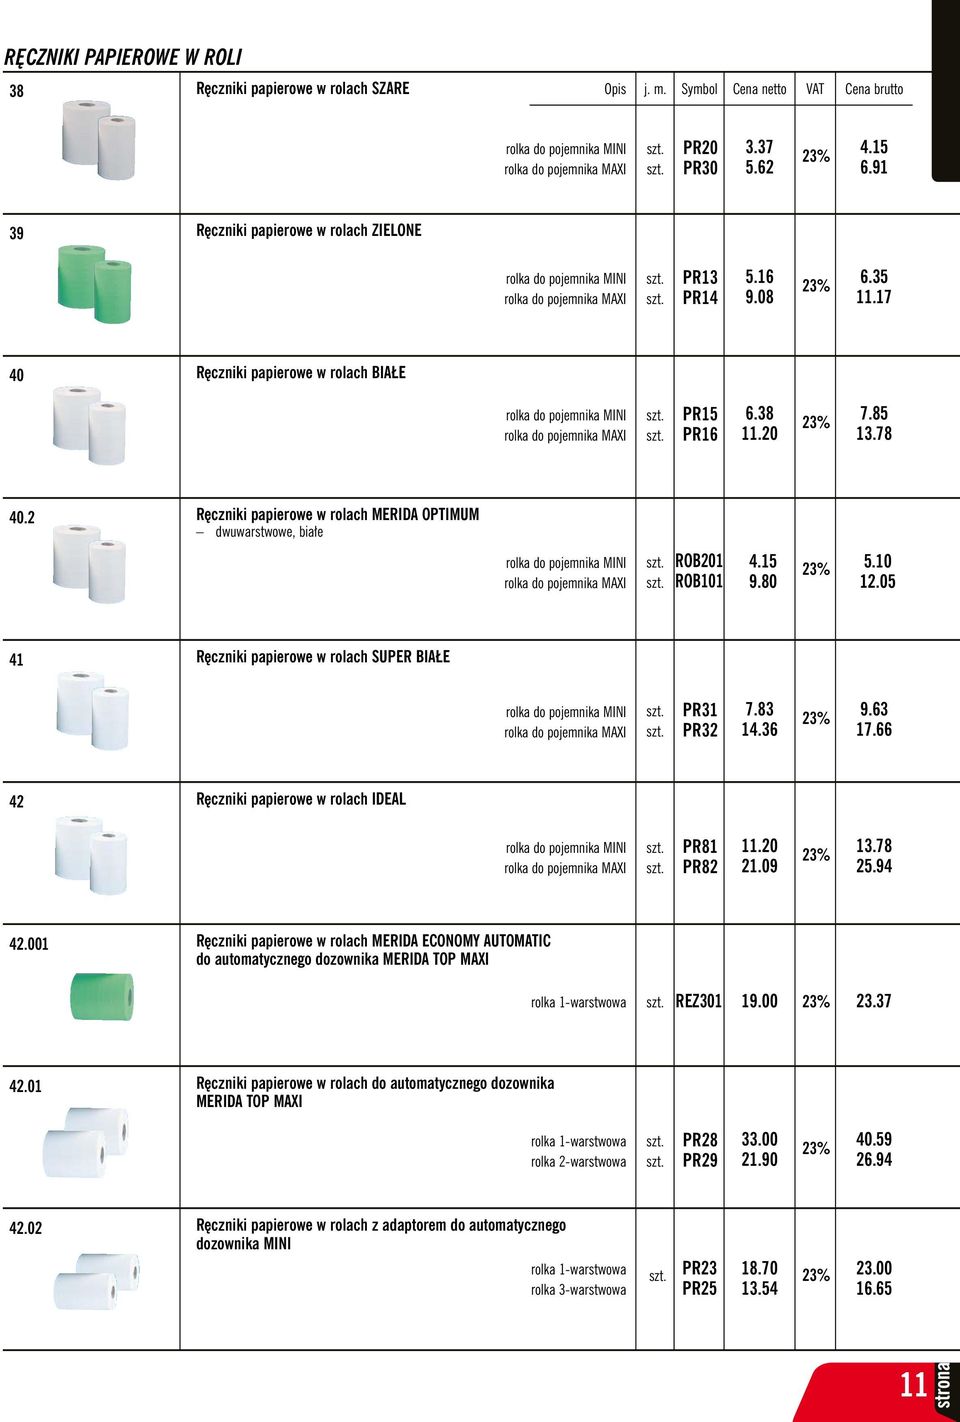 17 40 Ręczniki papierowe w rolach BIAŁE rolka do pojemnika MINI rolka do pojemnika MAXI PR15 PR16 6.38 11.20 7.85 13.78 40.